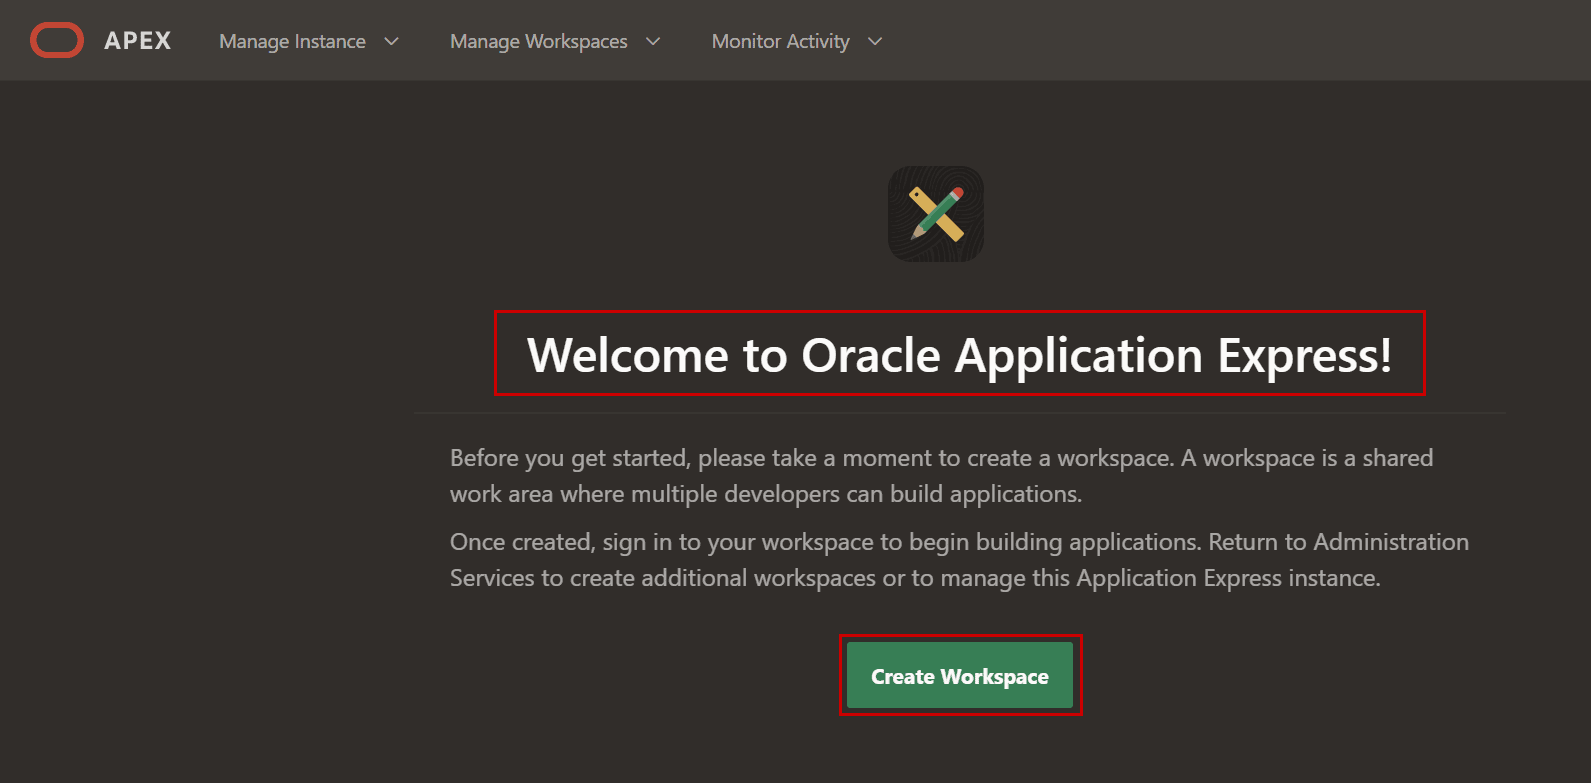 Oracle APEX